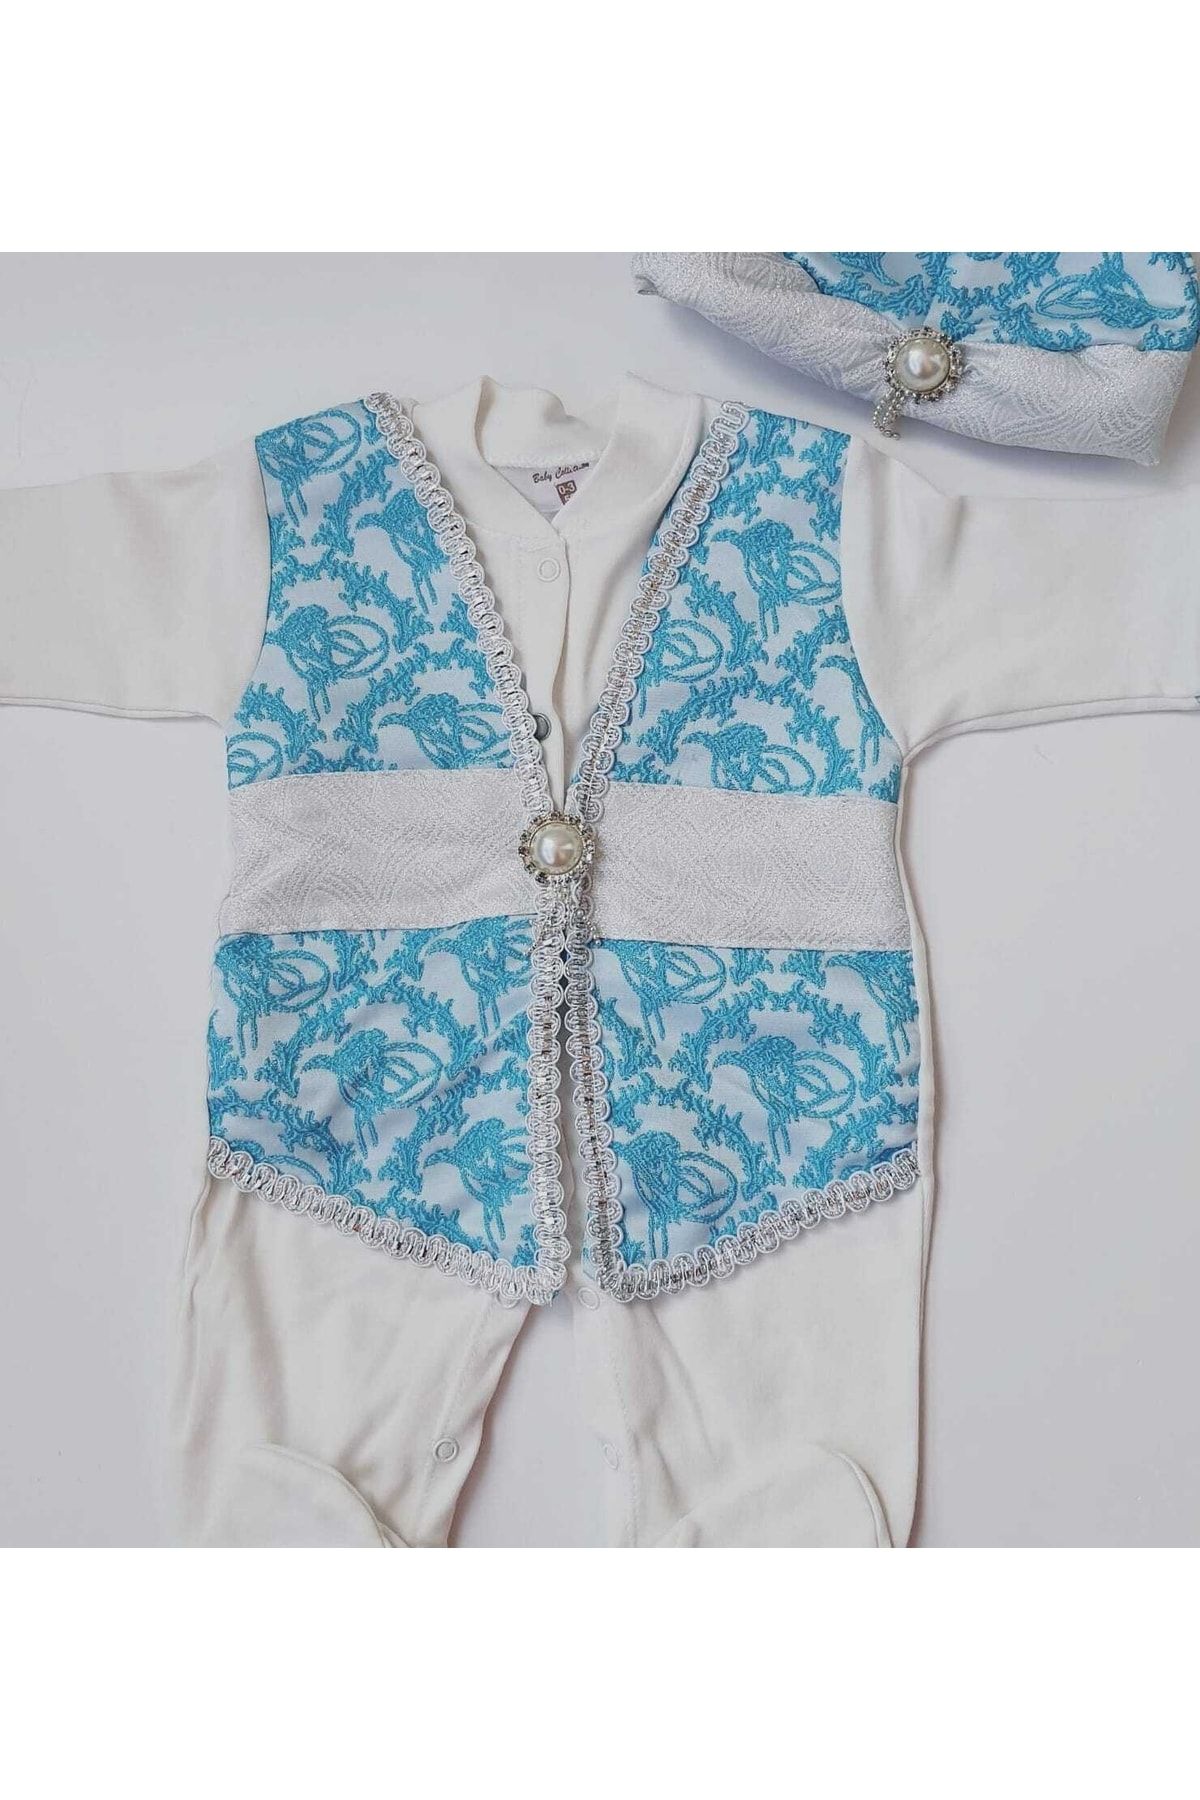 Petite Ponpon Baby Yenidoğan Erkek Bebek Mevlüt Takımı Şehzade Mevlütlük Sünnetlik Sünnet Kıyafeti Bebek Hediyelik